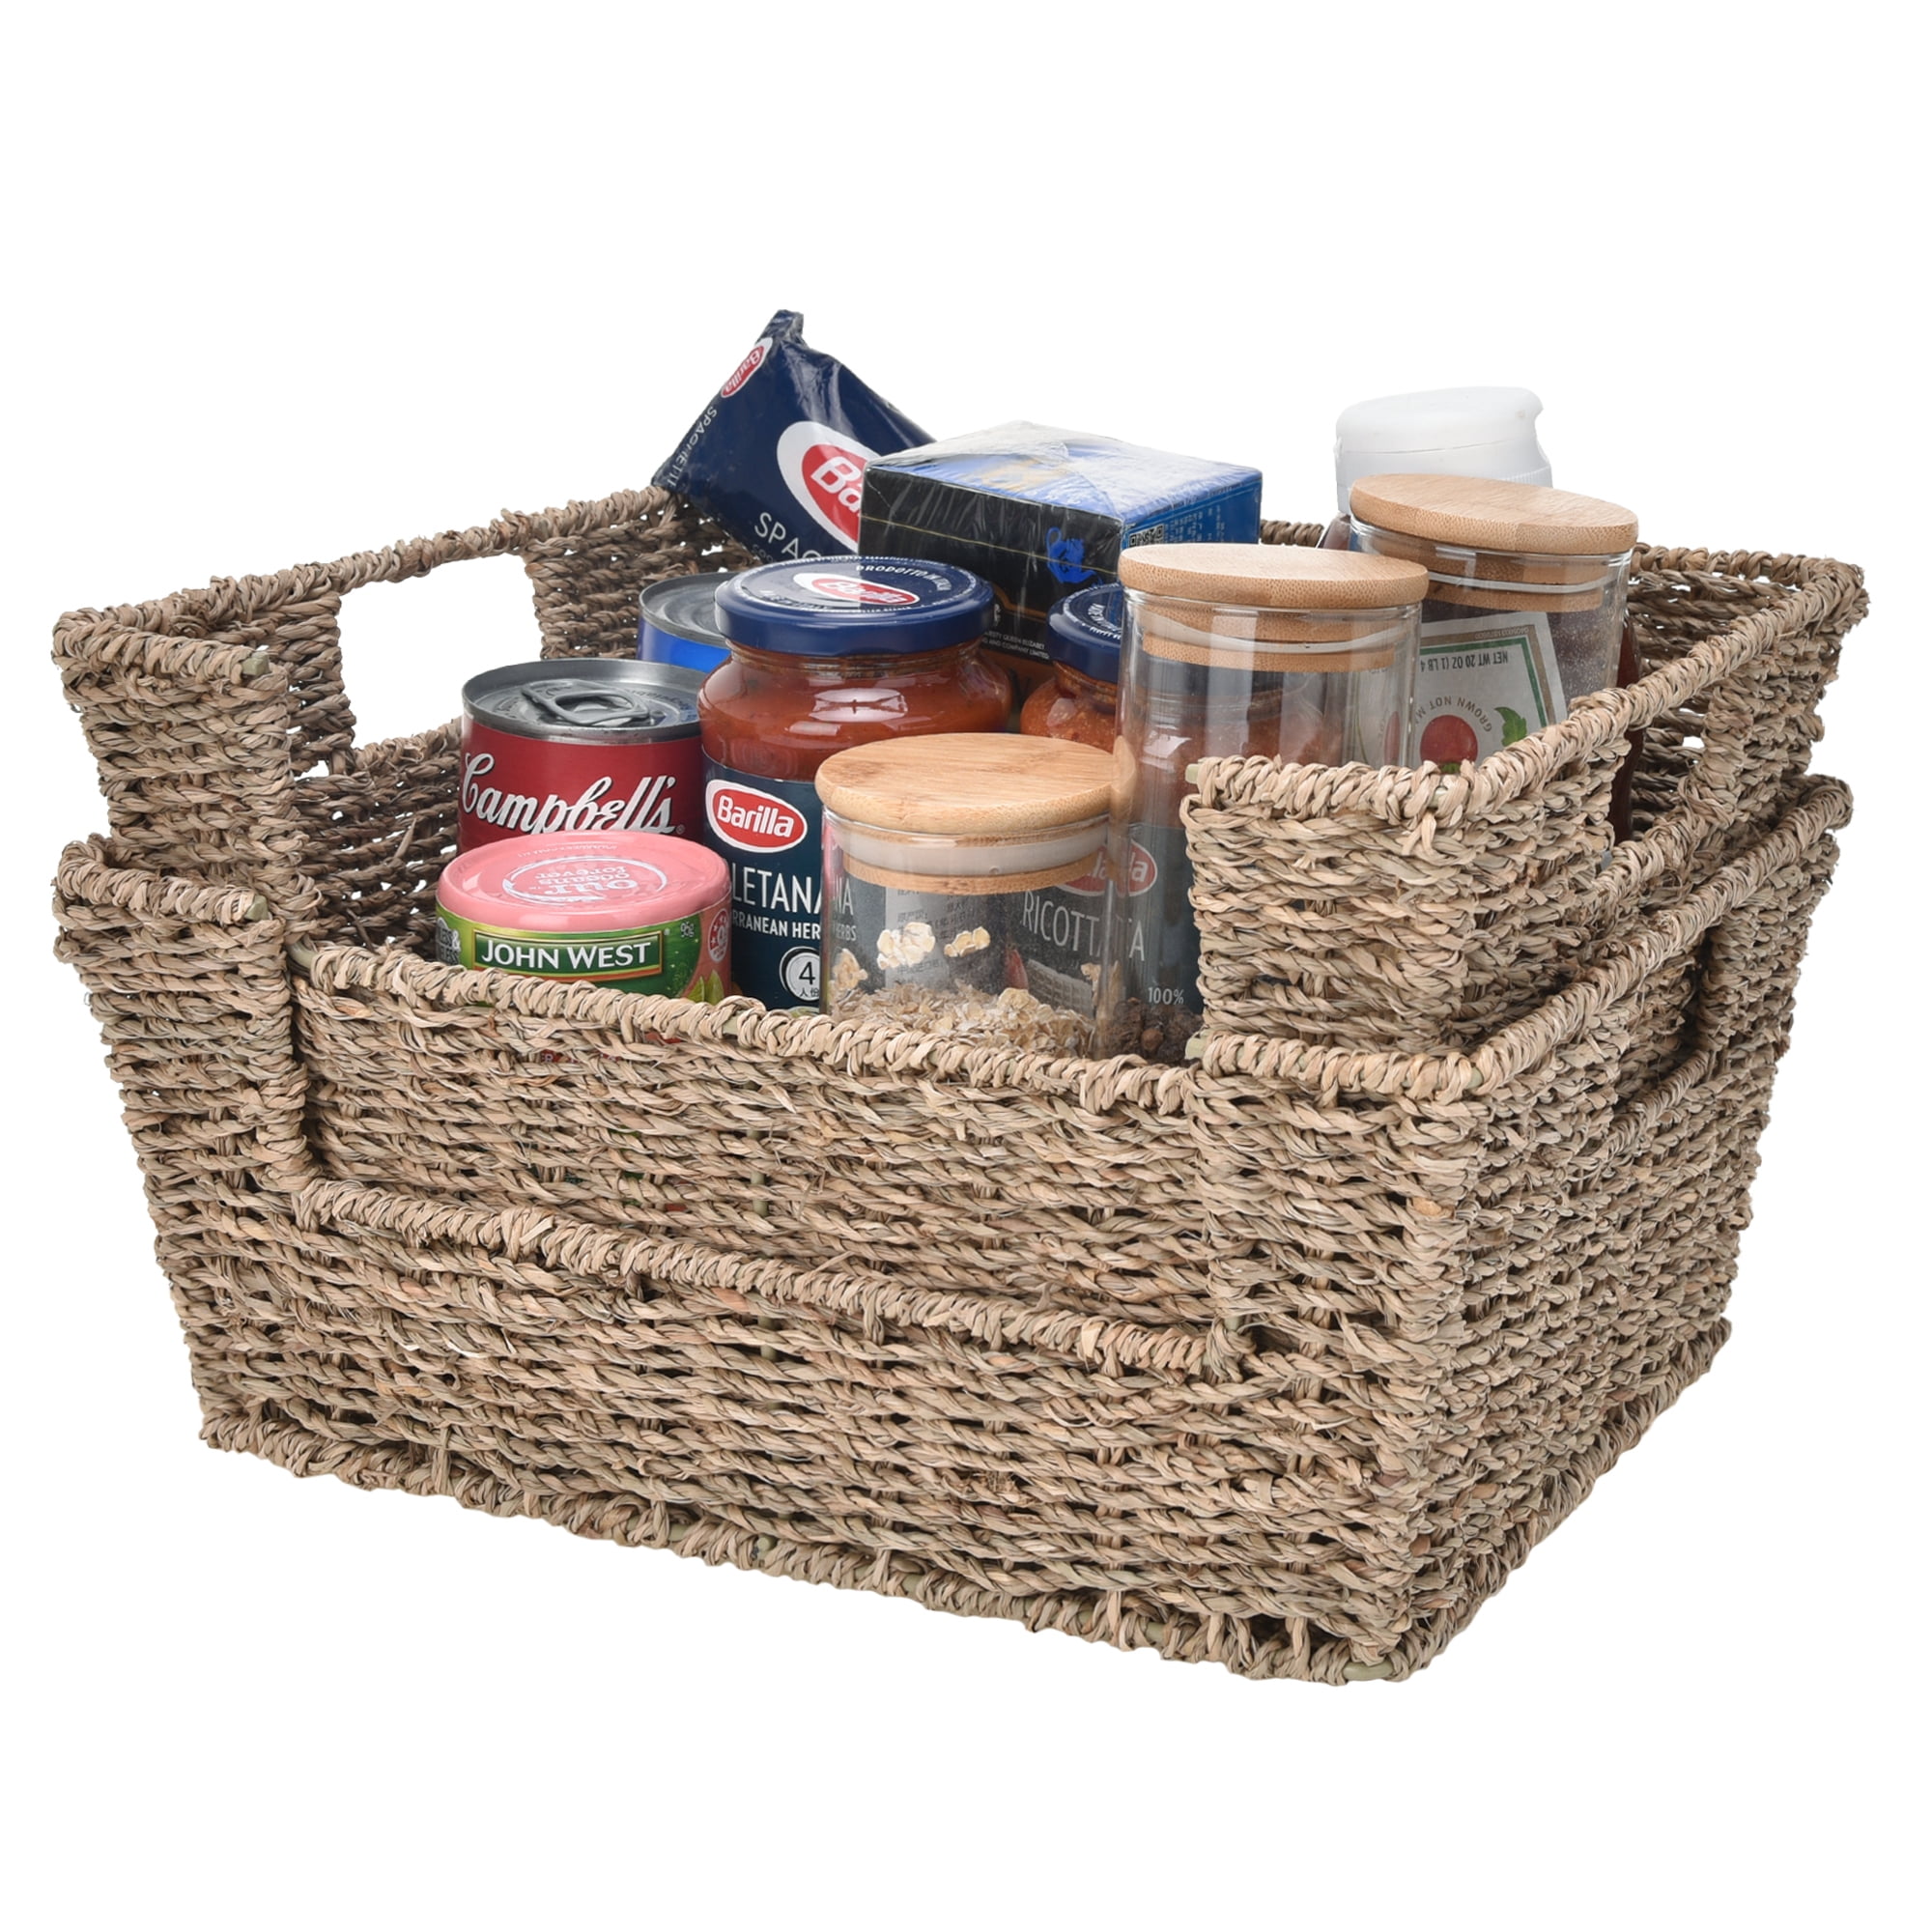 Details about   Hand Woven Seagrass Storage Basket Home Desktop Organizer Baskets 